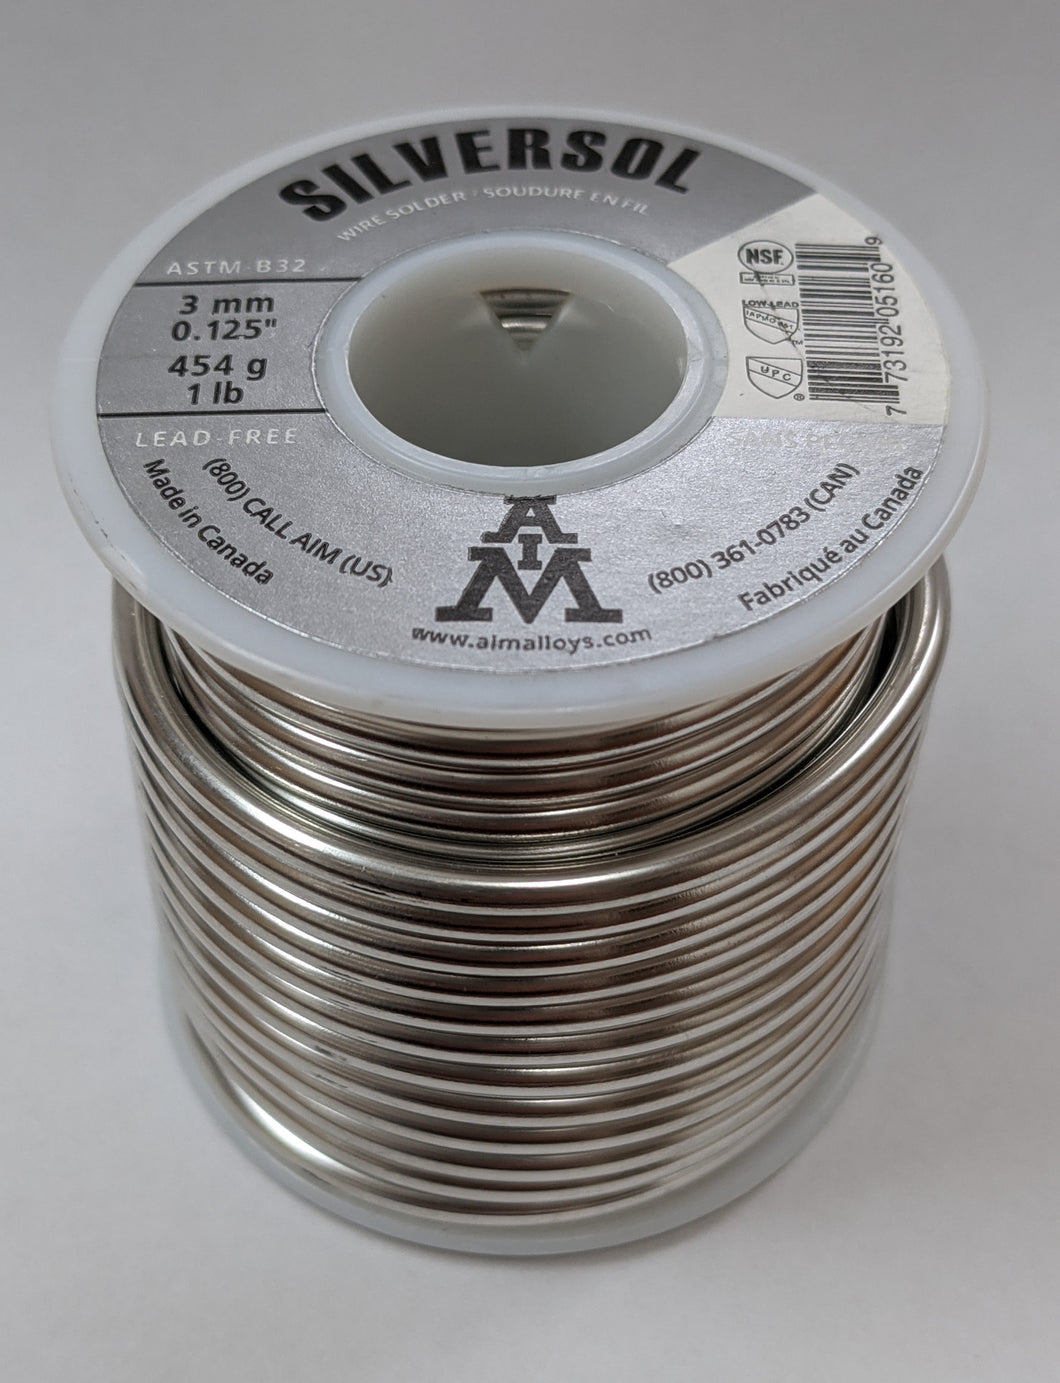 目的Silversol Silver-Bearing无铅焊锡丝,0.125